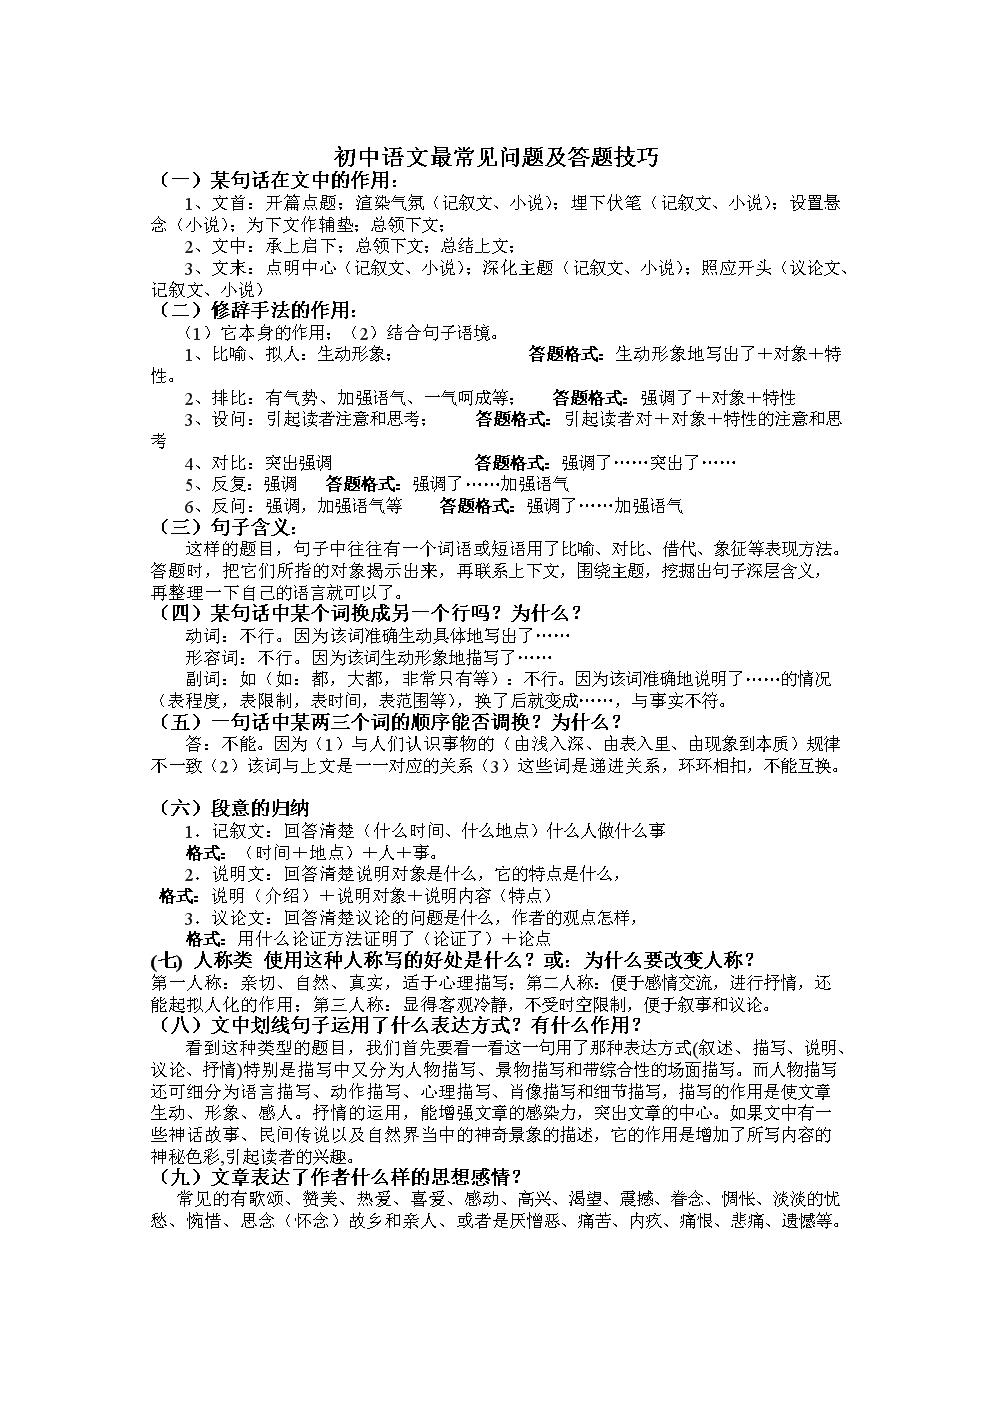 初中语文48个答题公式,初中阅读理解题的解题套路